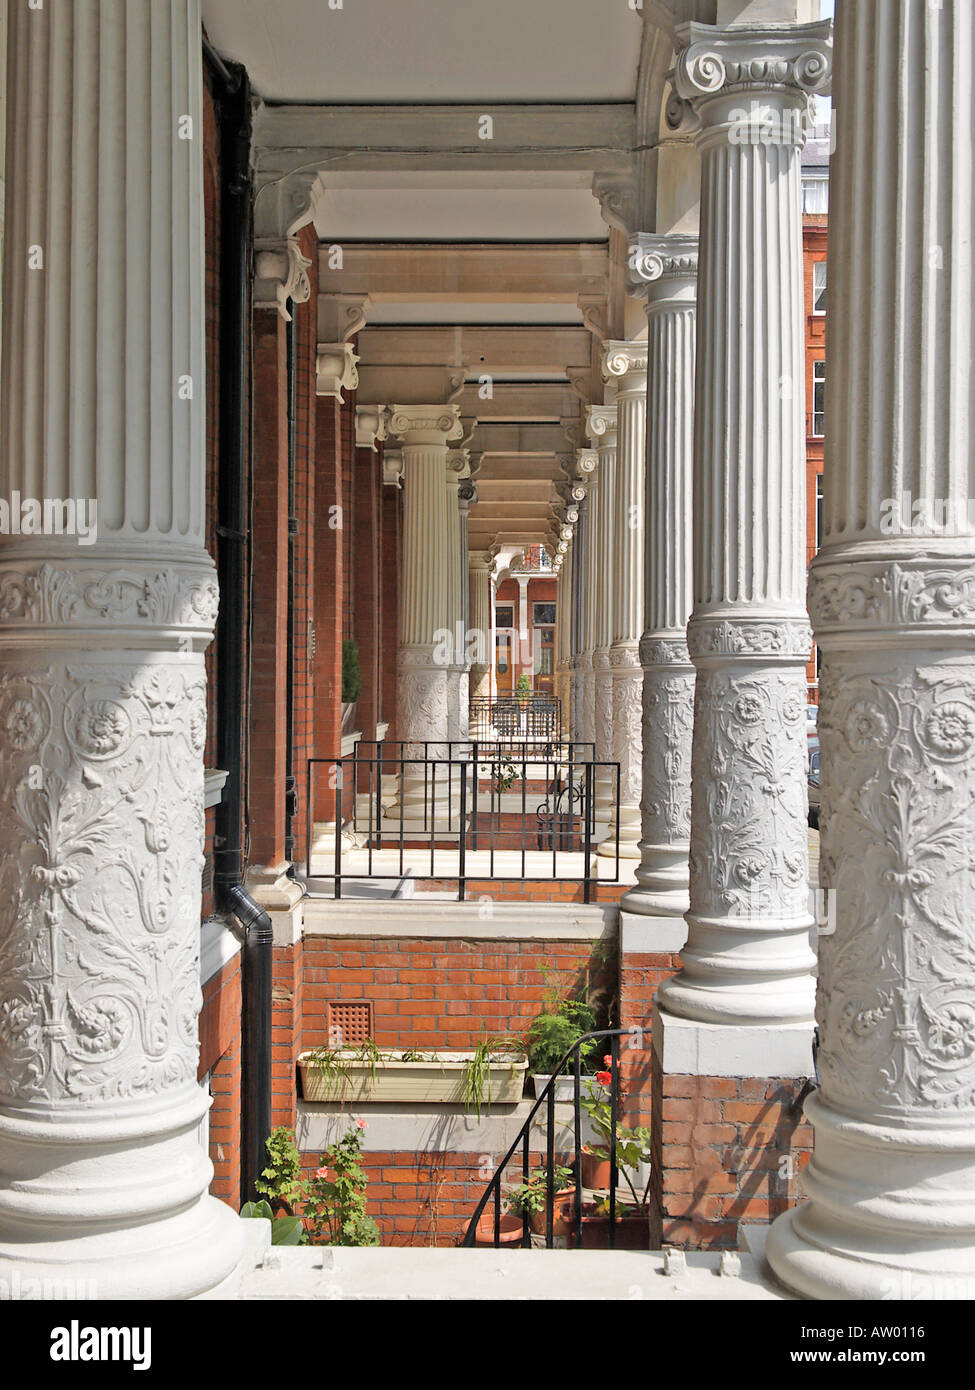 A portico in Cadogan Square Knightsbridge London Stock Photo